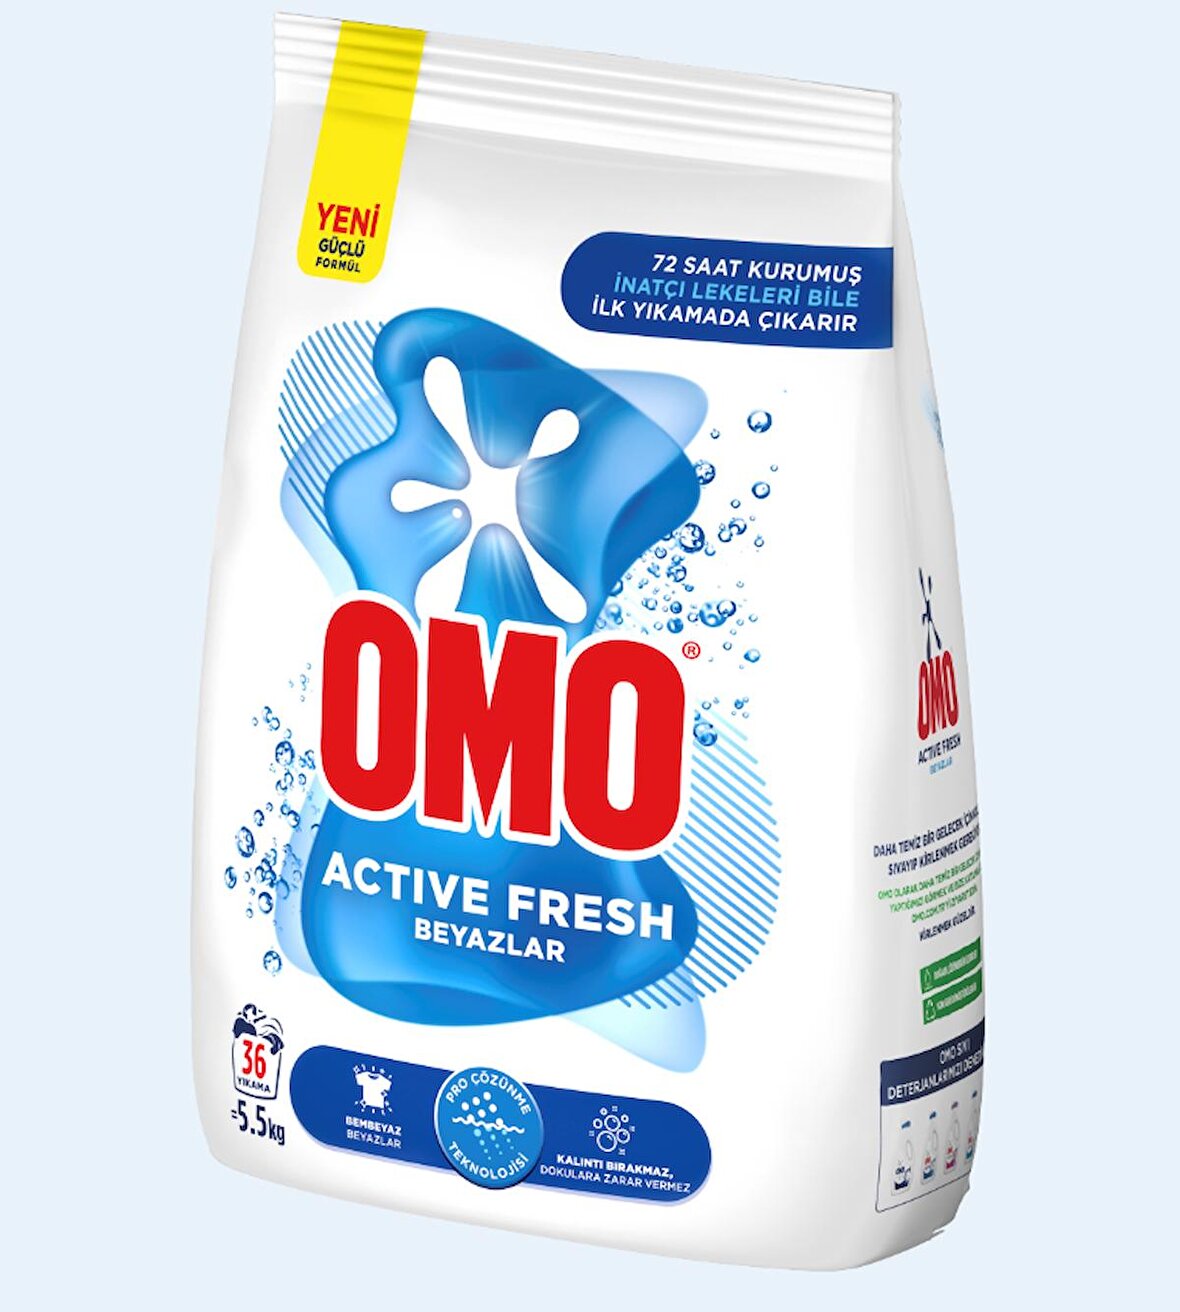 Omo Active Fresh Beyazlar İçin Toz Çamaşır Deterjanı 5.5 kg 36 Yıkama